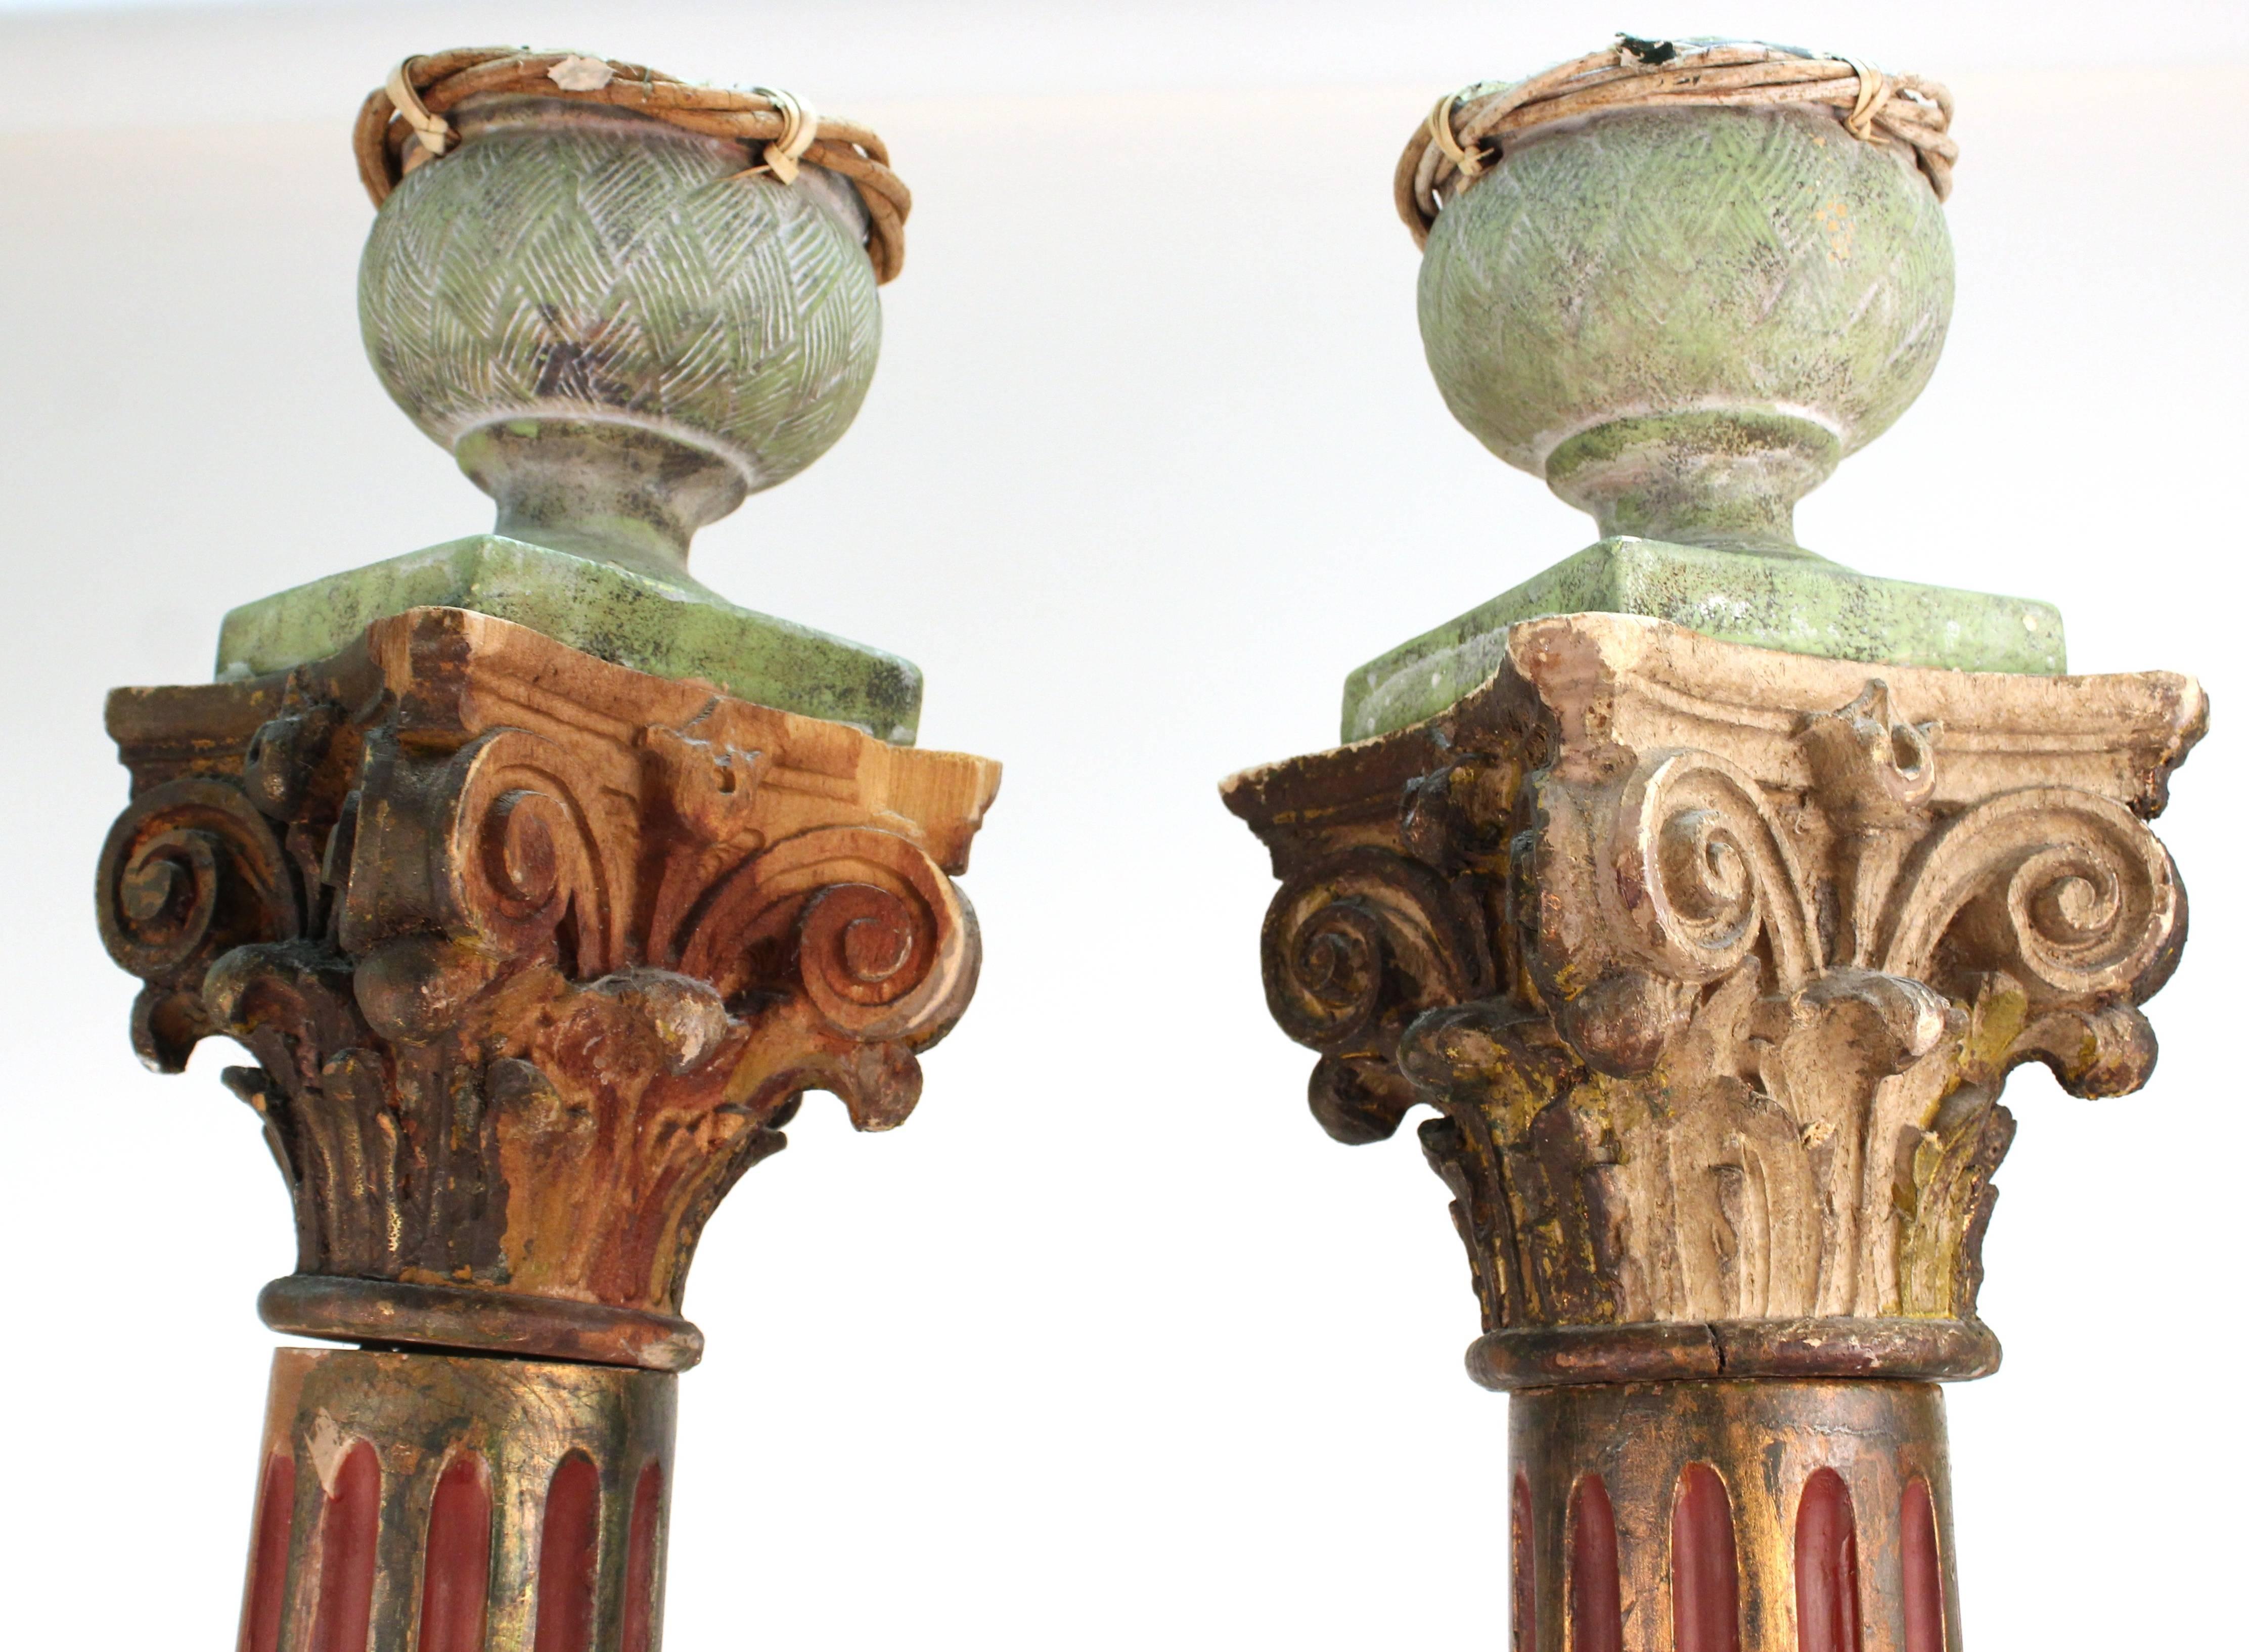 Viktorianische korinthische Säulen aus Holz mit Vögeln auf der Oberseite, viktorianisch (19. Jahrhundert)